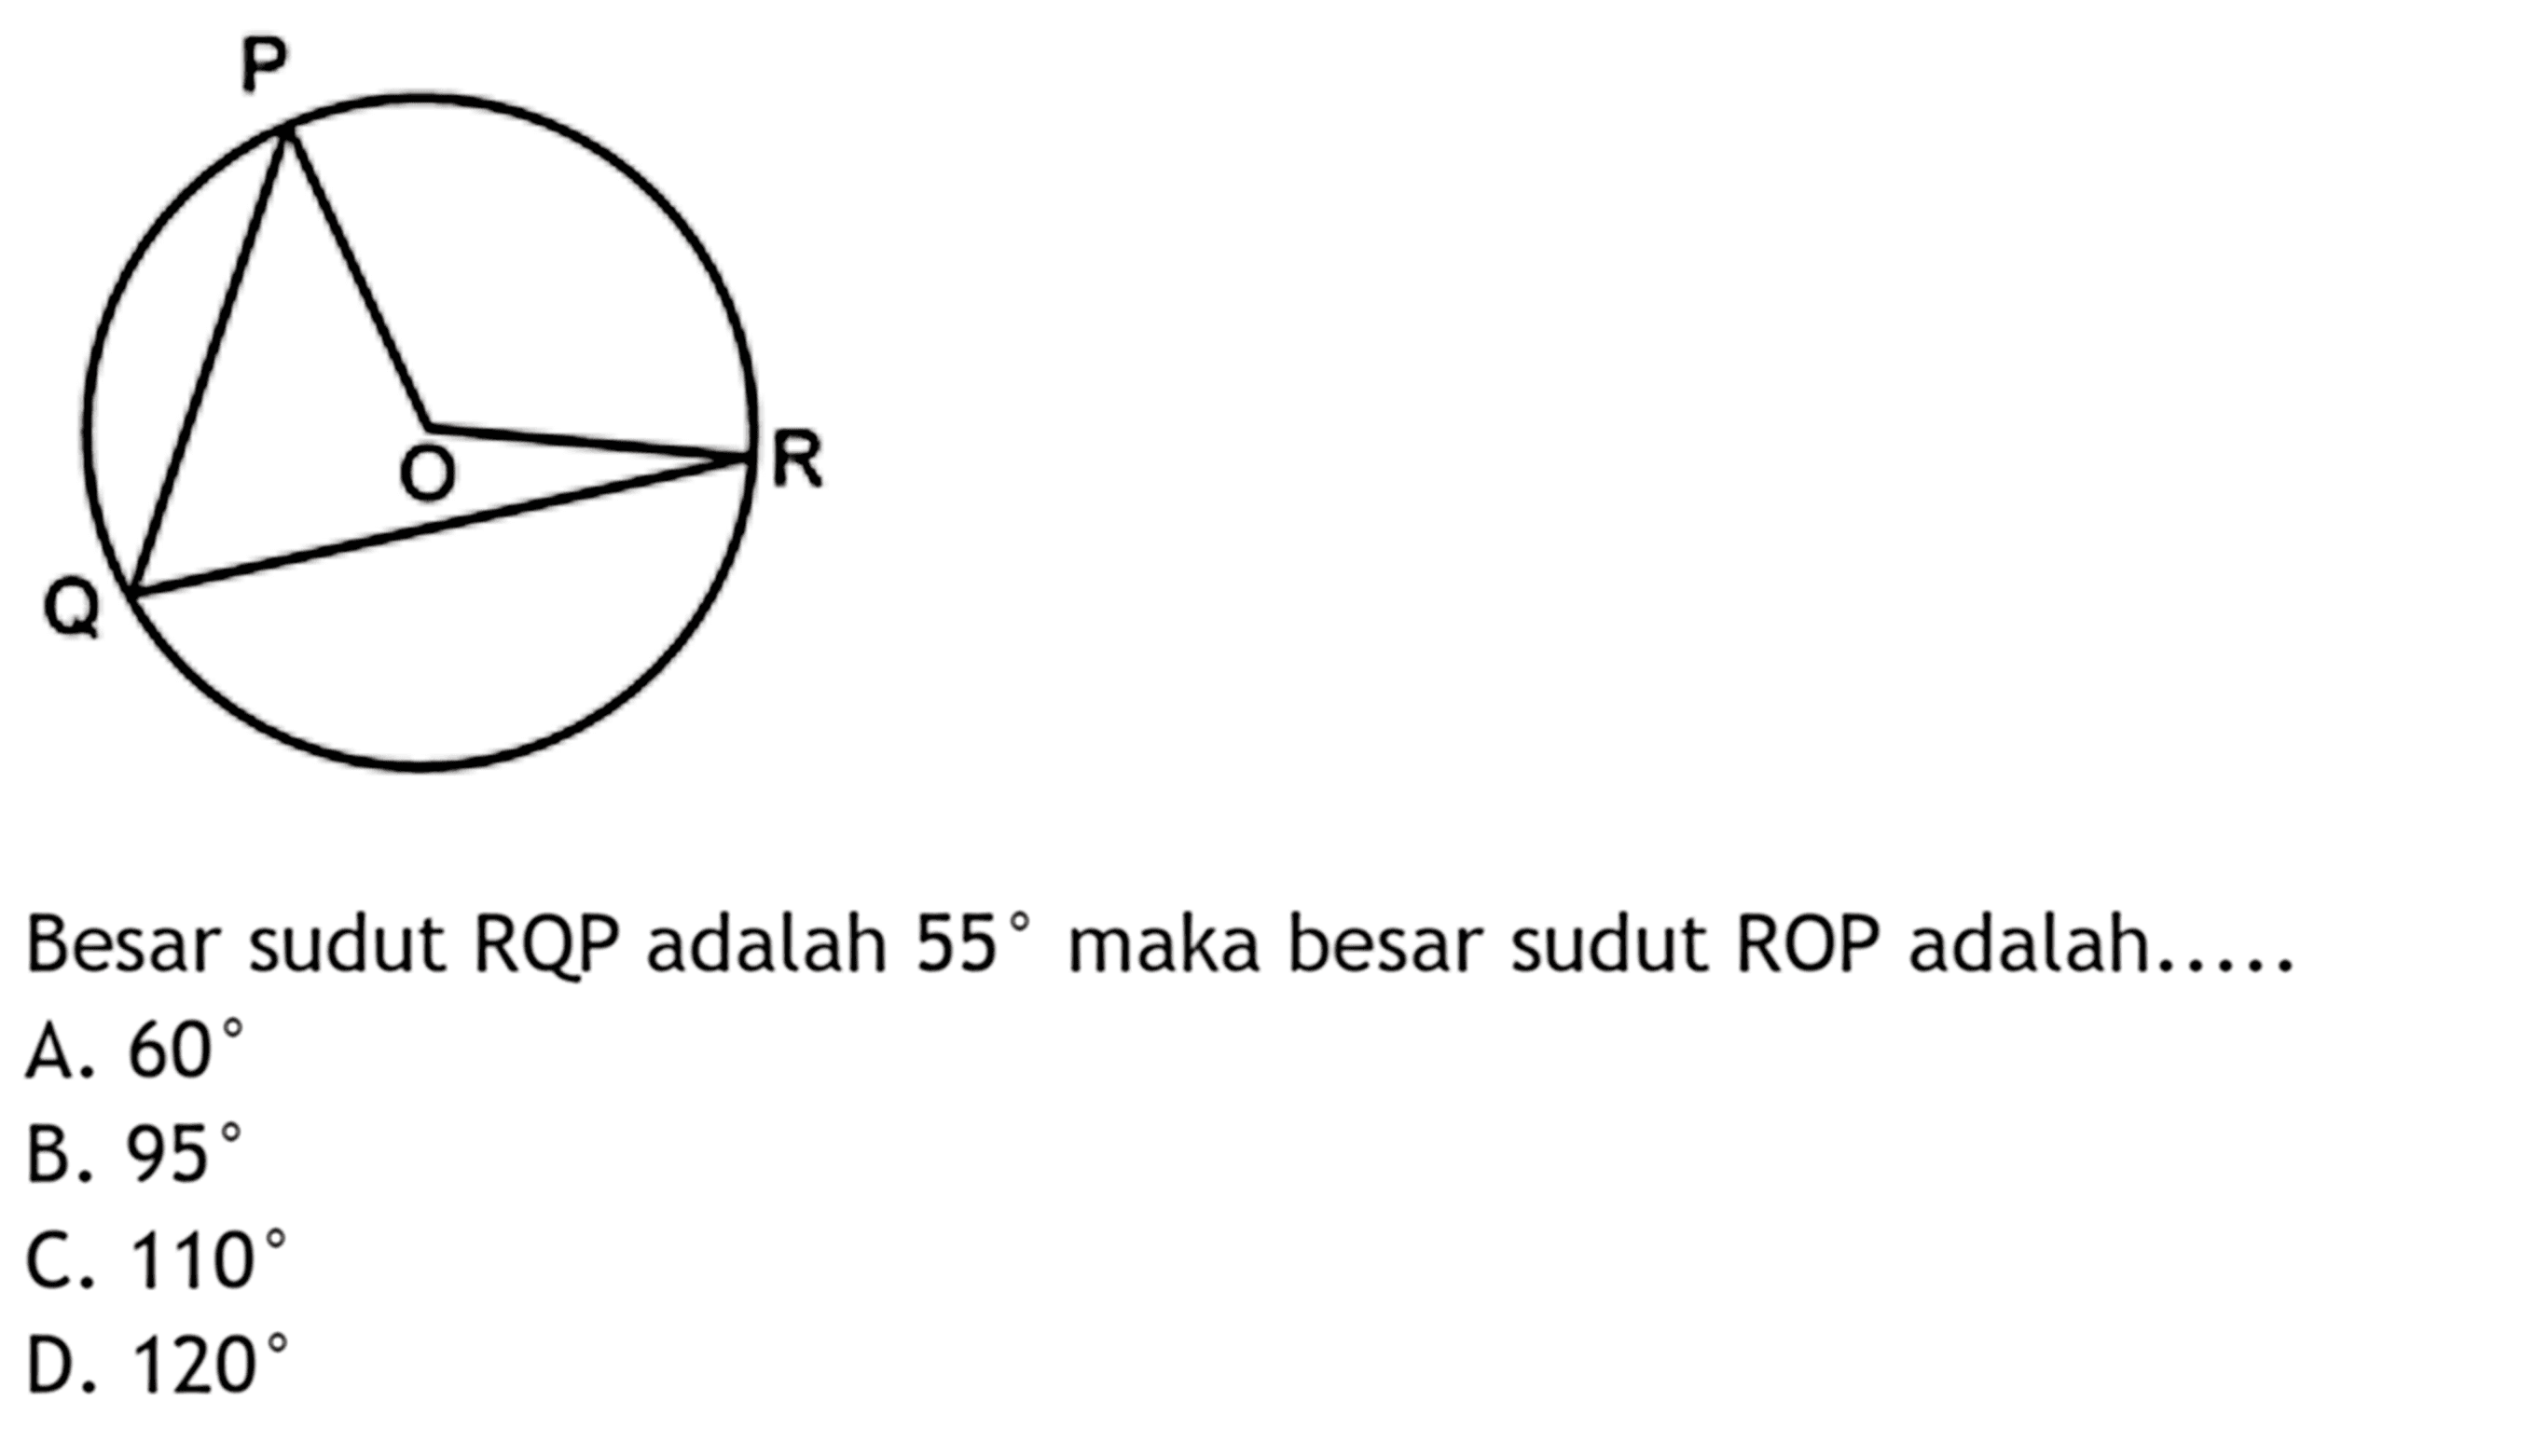 Besar sudut RQP adalah 55 maka besar sudut ROP adalah.....